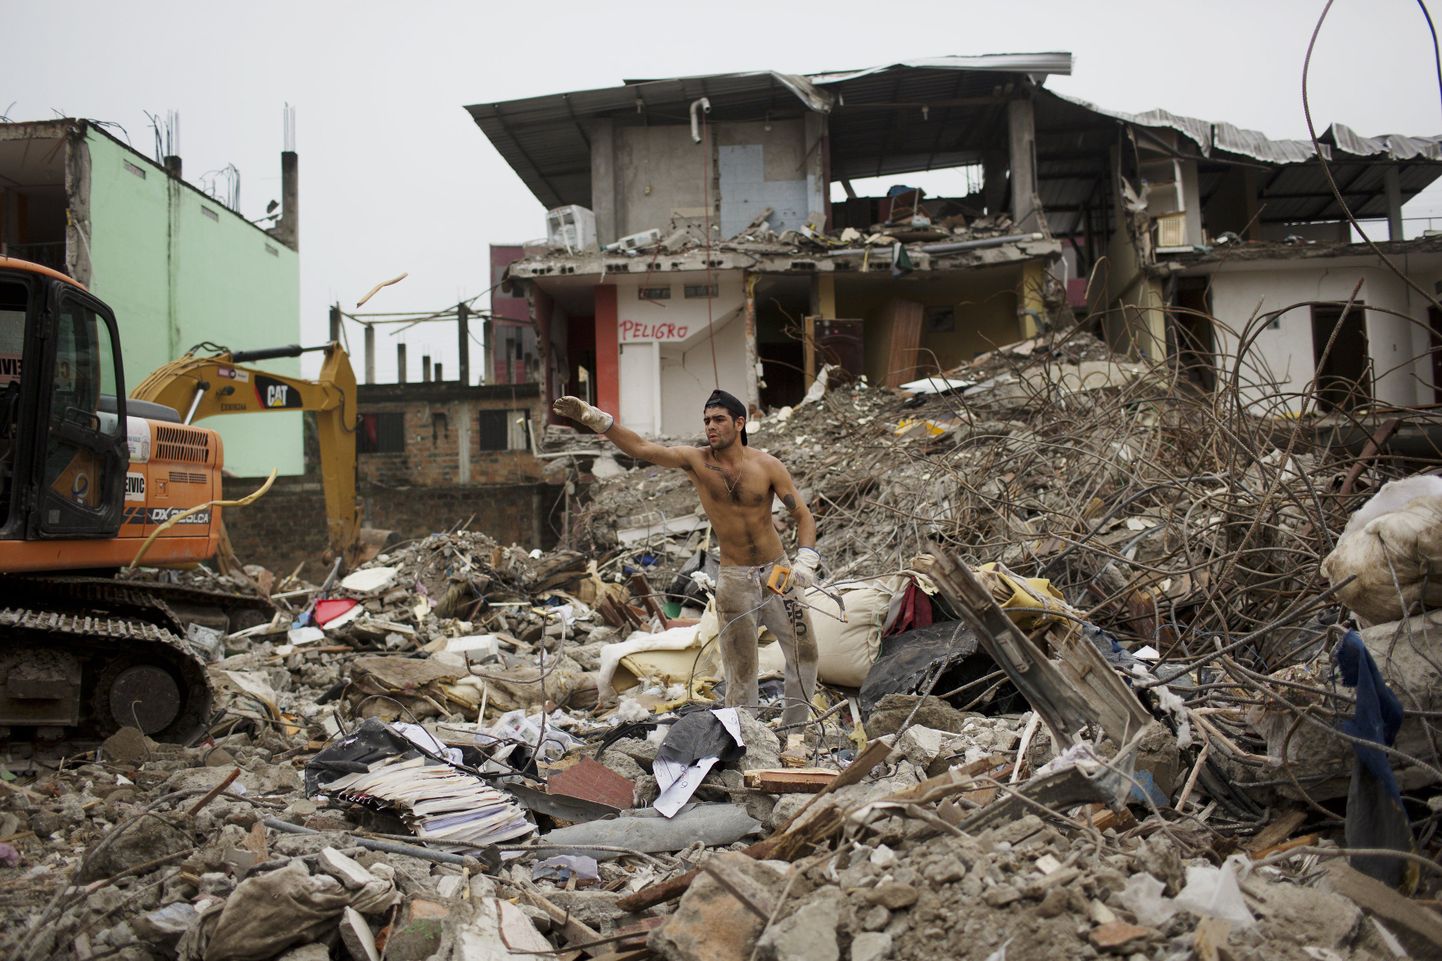 Ecuadori maavärinas sai surma üle 650 inimese ning üle 27 000 inimese vigastada.